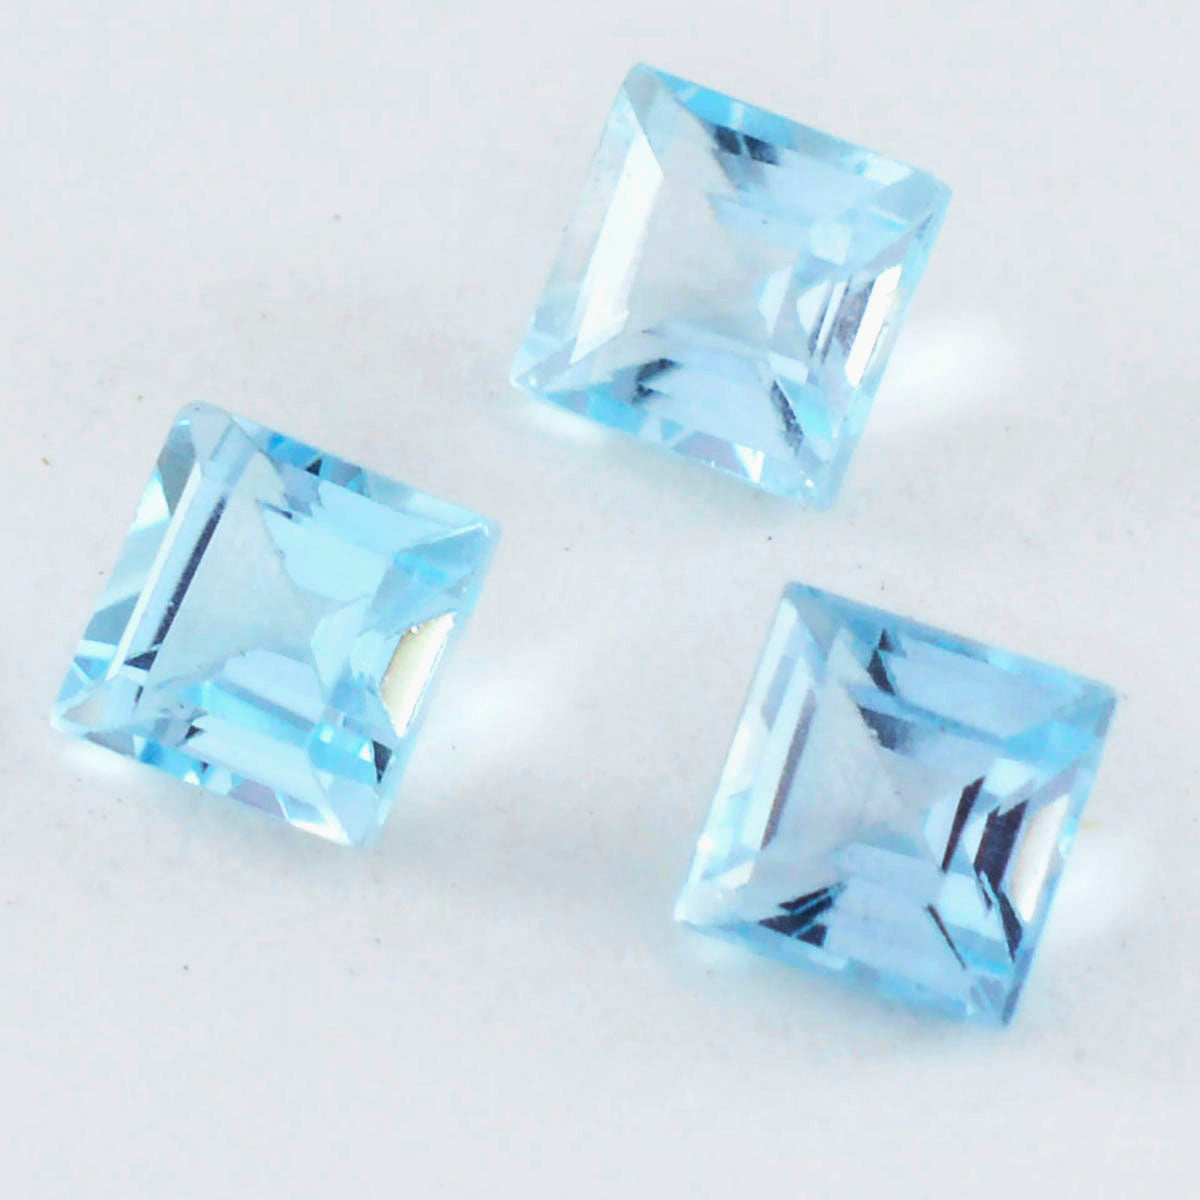 riyogems 1шт натуральный голубой топаз ограненный 13x13 мм квадратной формы драгоценные камни отличного качества